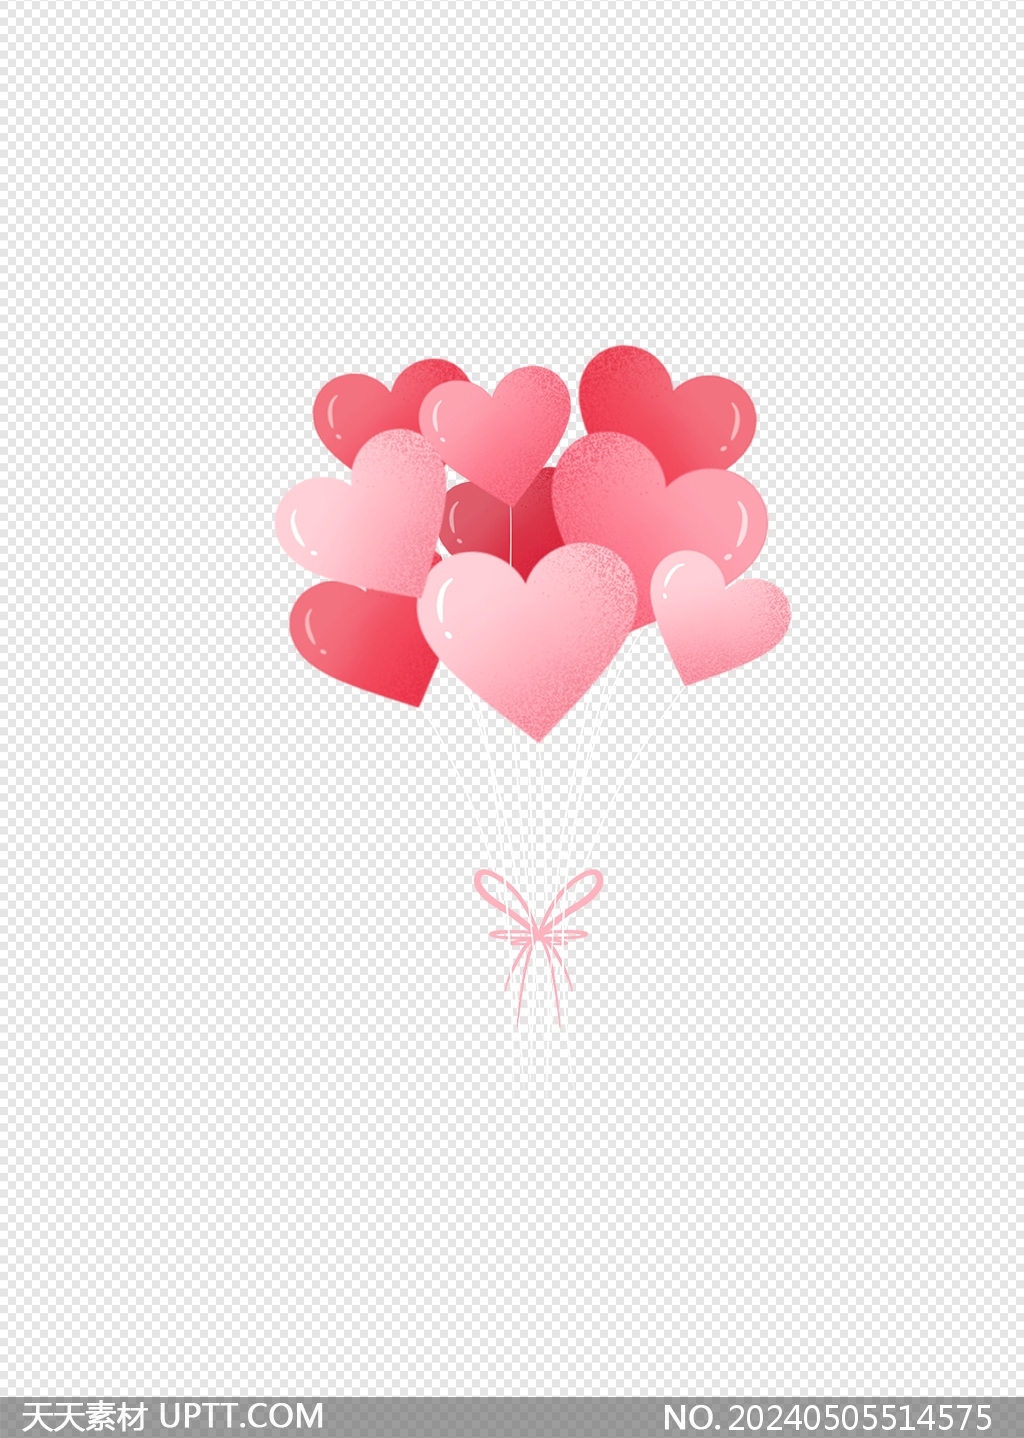 情人节妇女节七夕节告白季粉色爱心气球元素素材